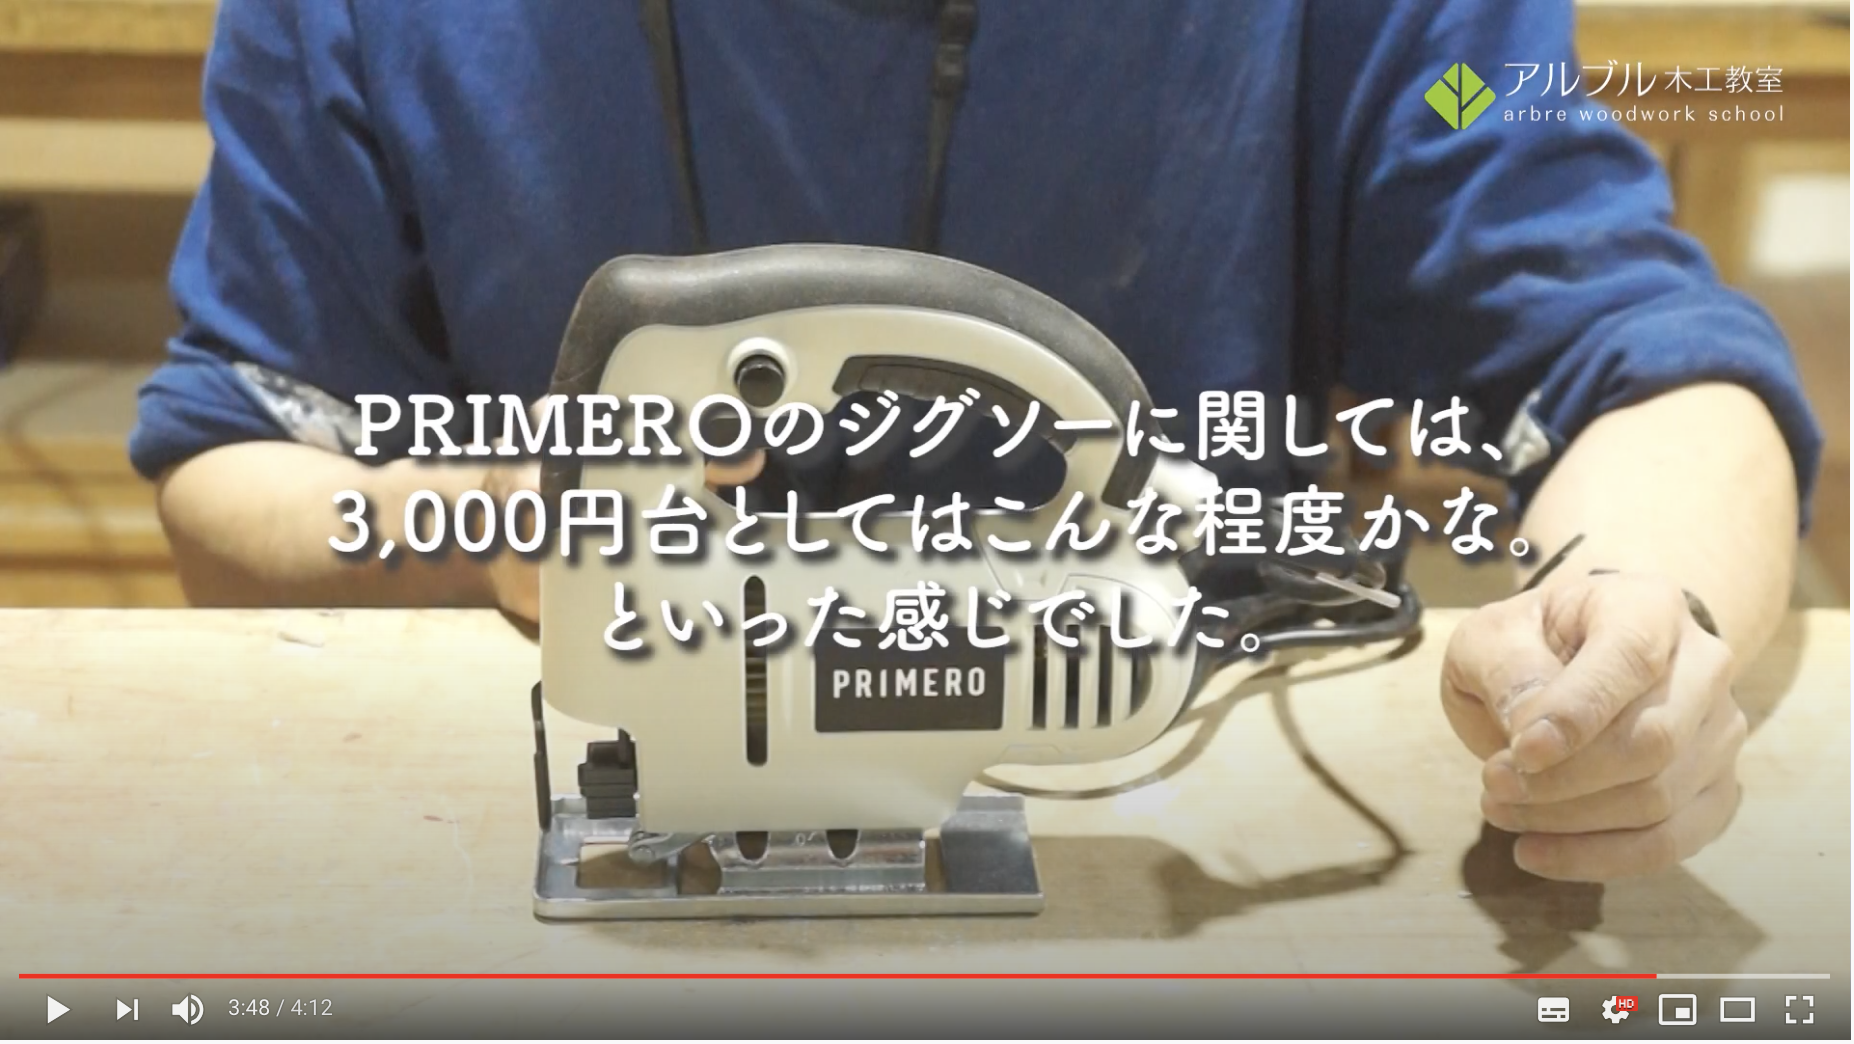 【PRIMERO】レビュー「15,000円以内で4種の電動工具が揃う!」(ジグソー編)